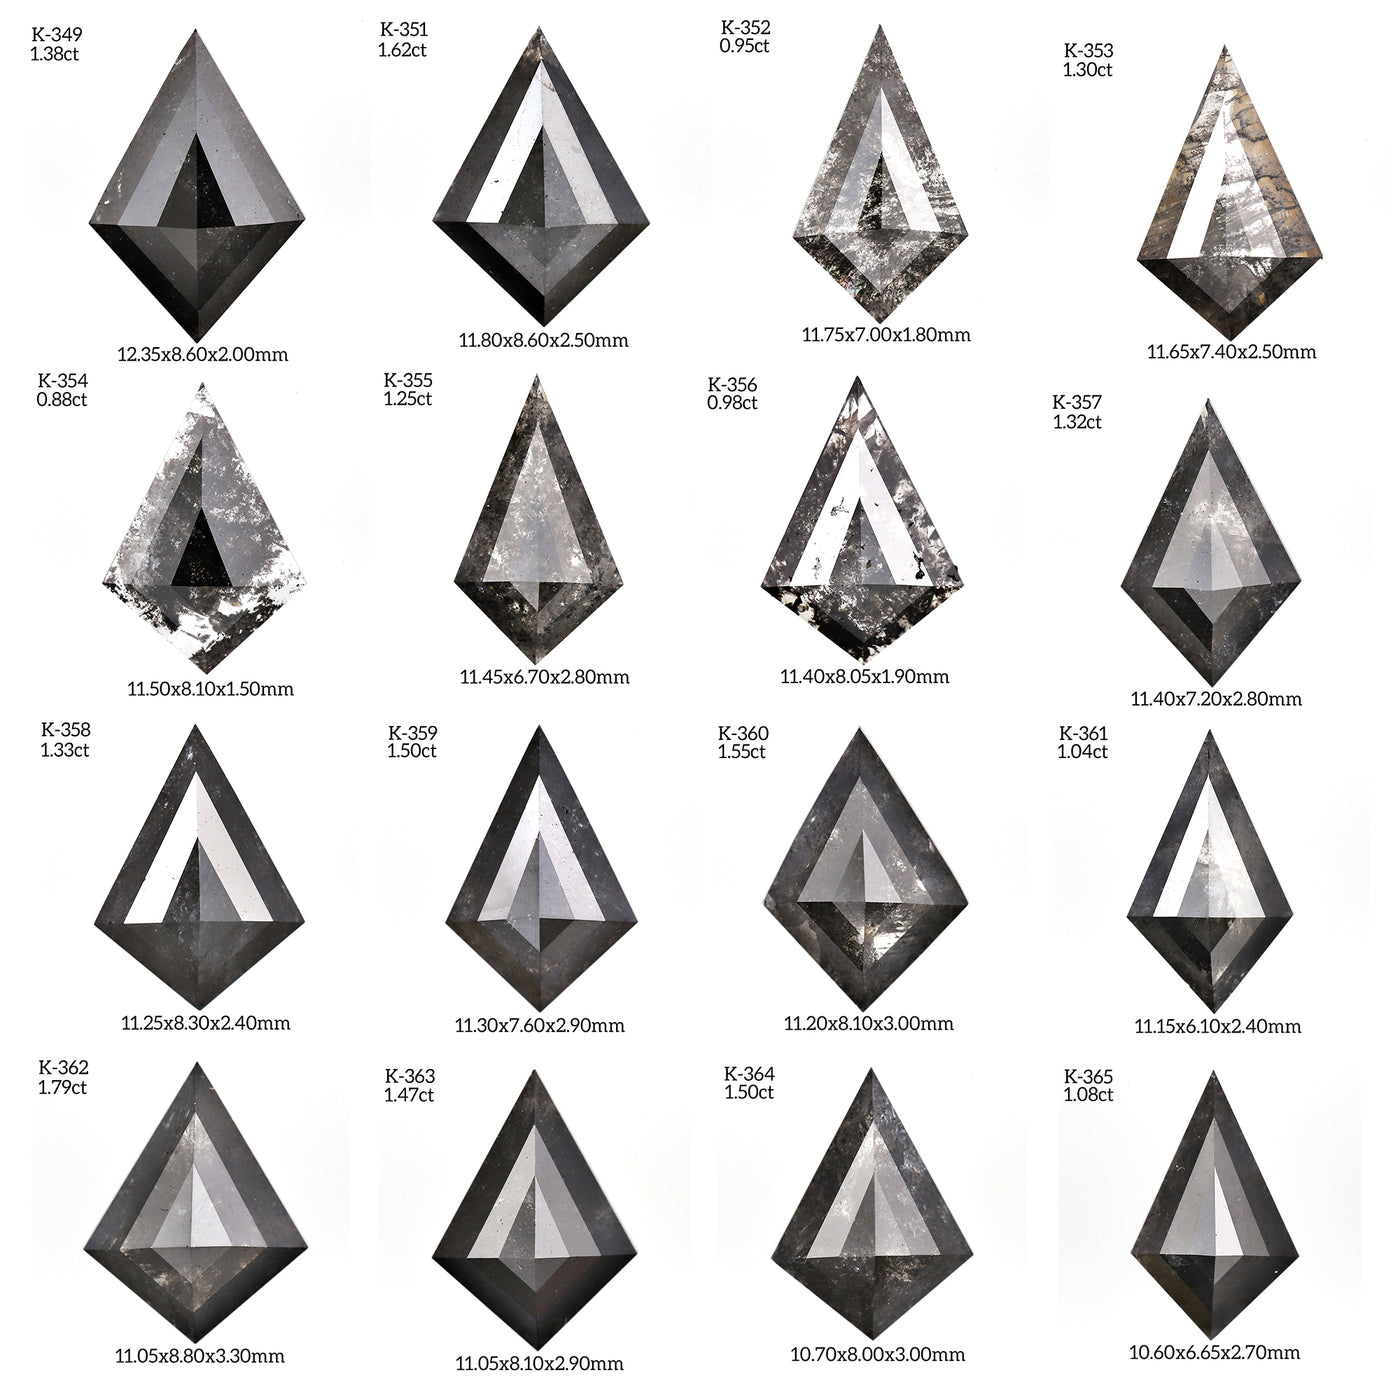 KB1 - Black kite diamond